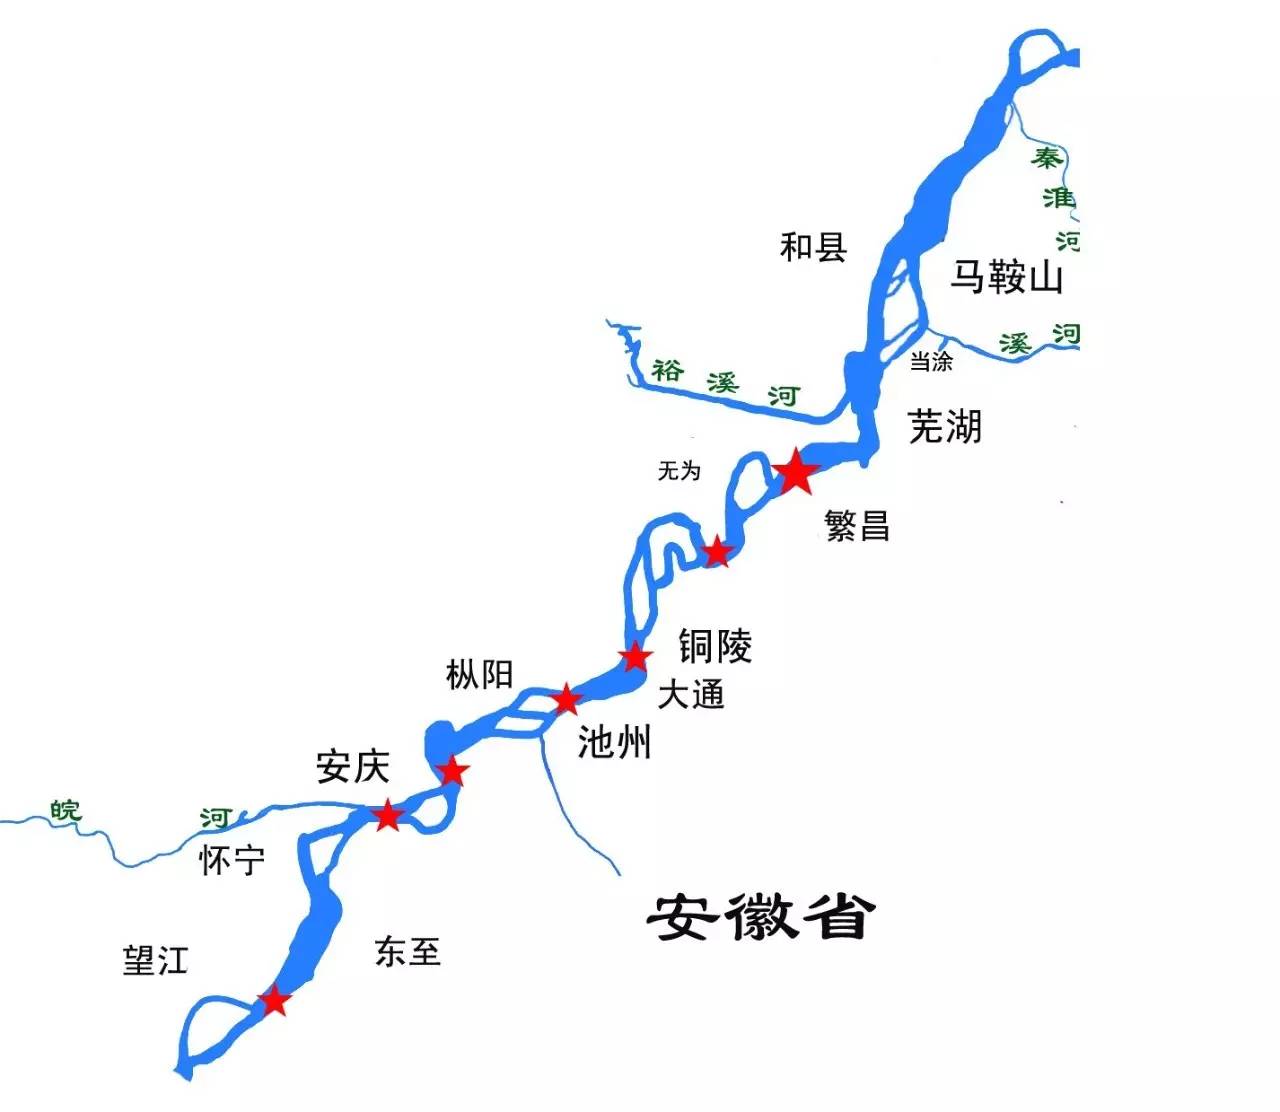 活动中,采访组通过图片,文字,直播等形式对长江上所有的大桥进行全景图片